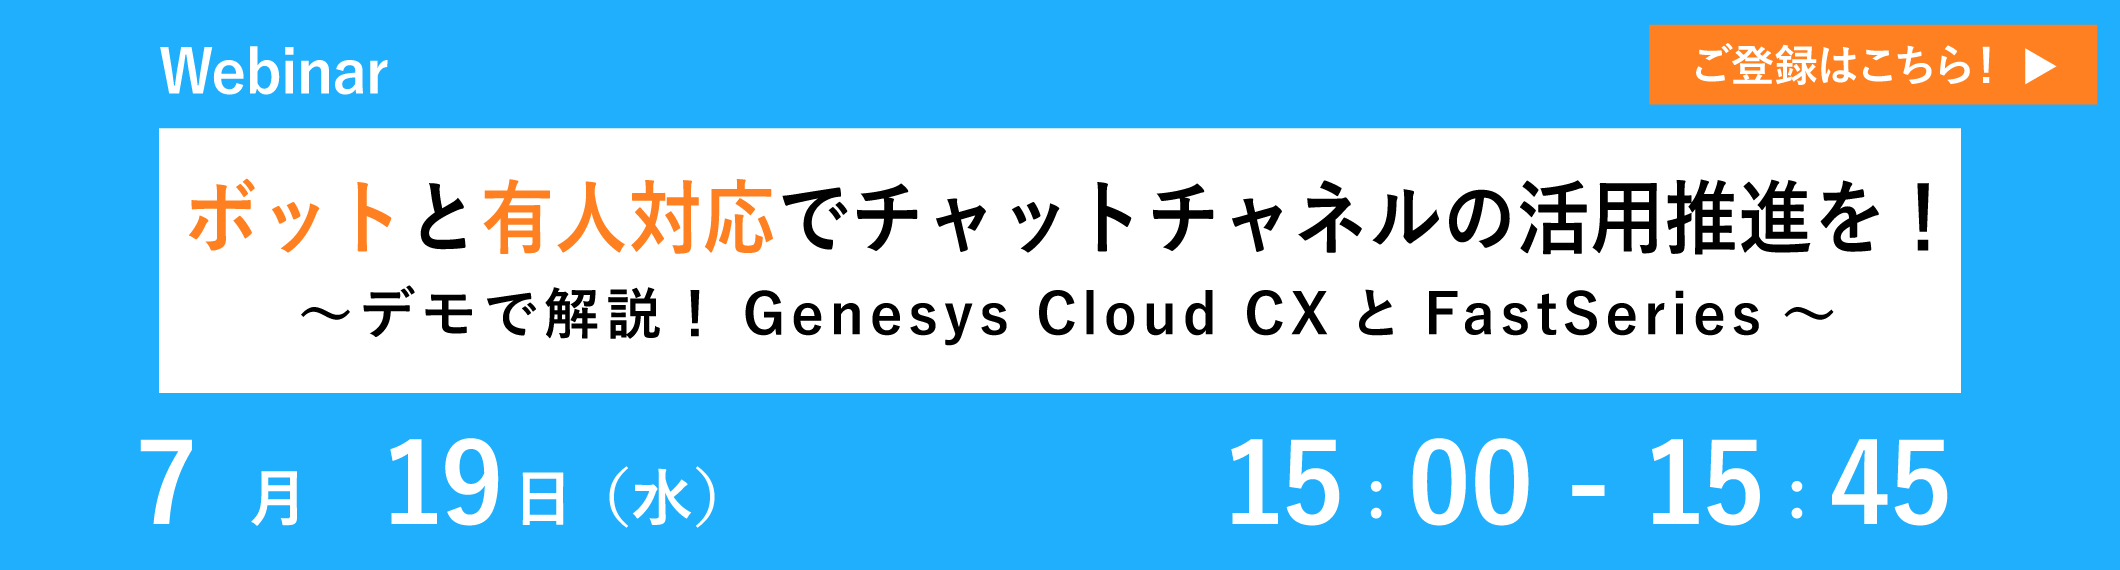 【7/19共催ウェビナー】ボットと有人対応でチャットチャネルの活用推進を！～デモで解説！Genesys Cloud CXとFastSeries～